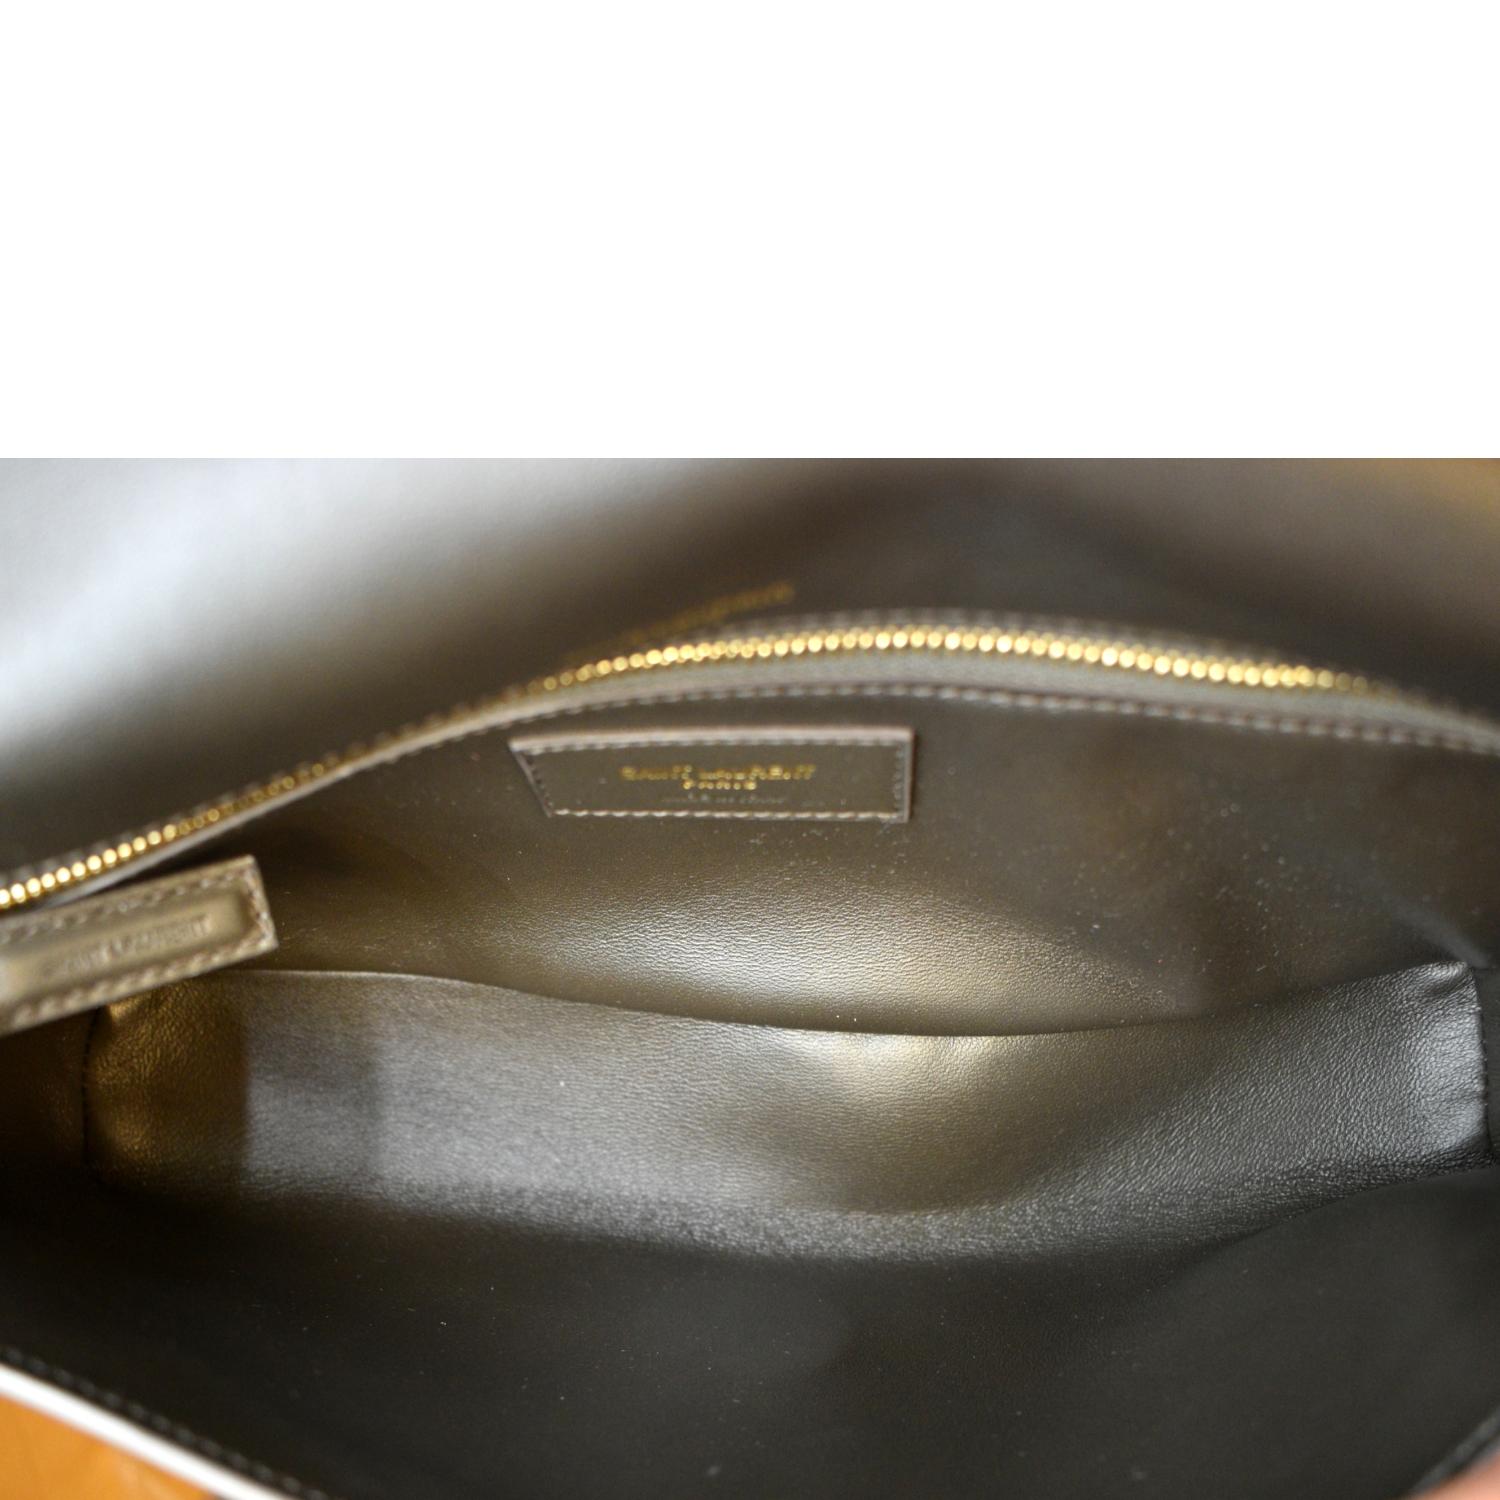 Stunning!* YSL Saint Laurent Kate 99 Gold Tassel Bag Shoulder Bag